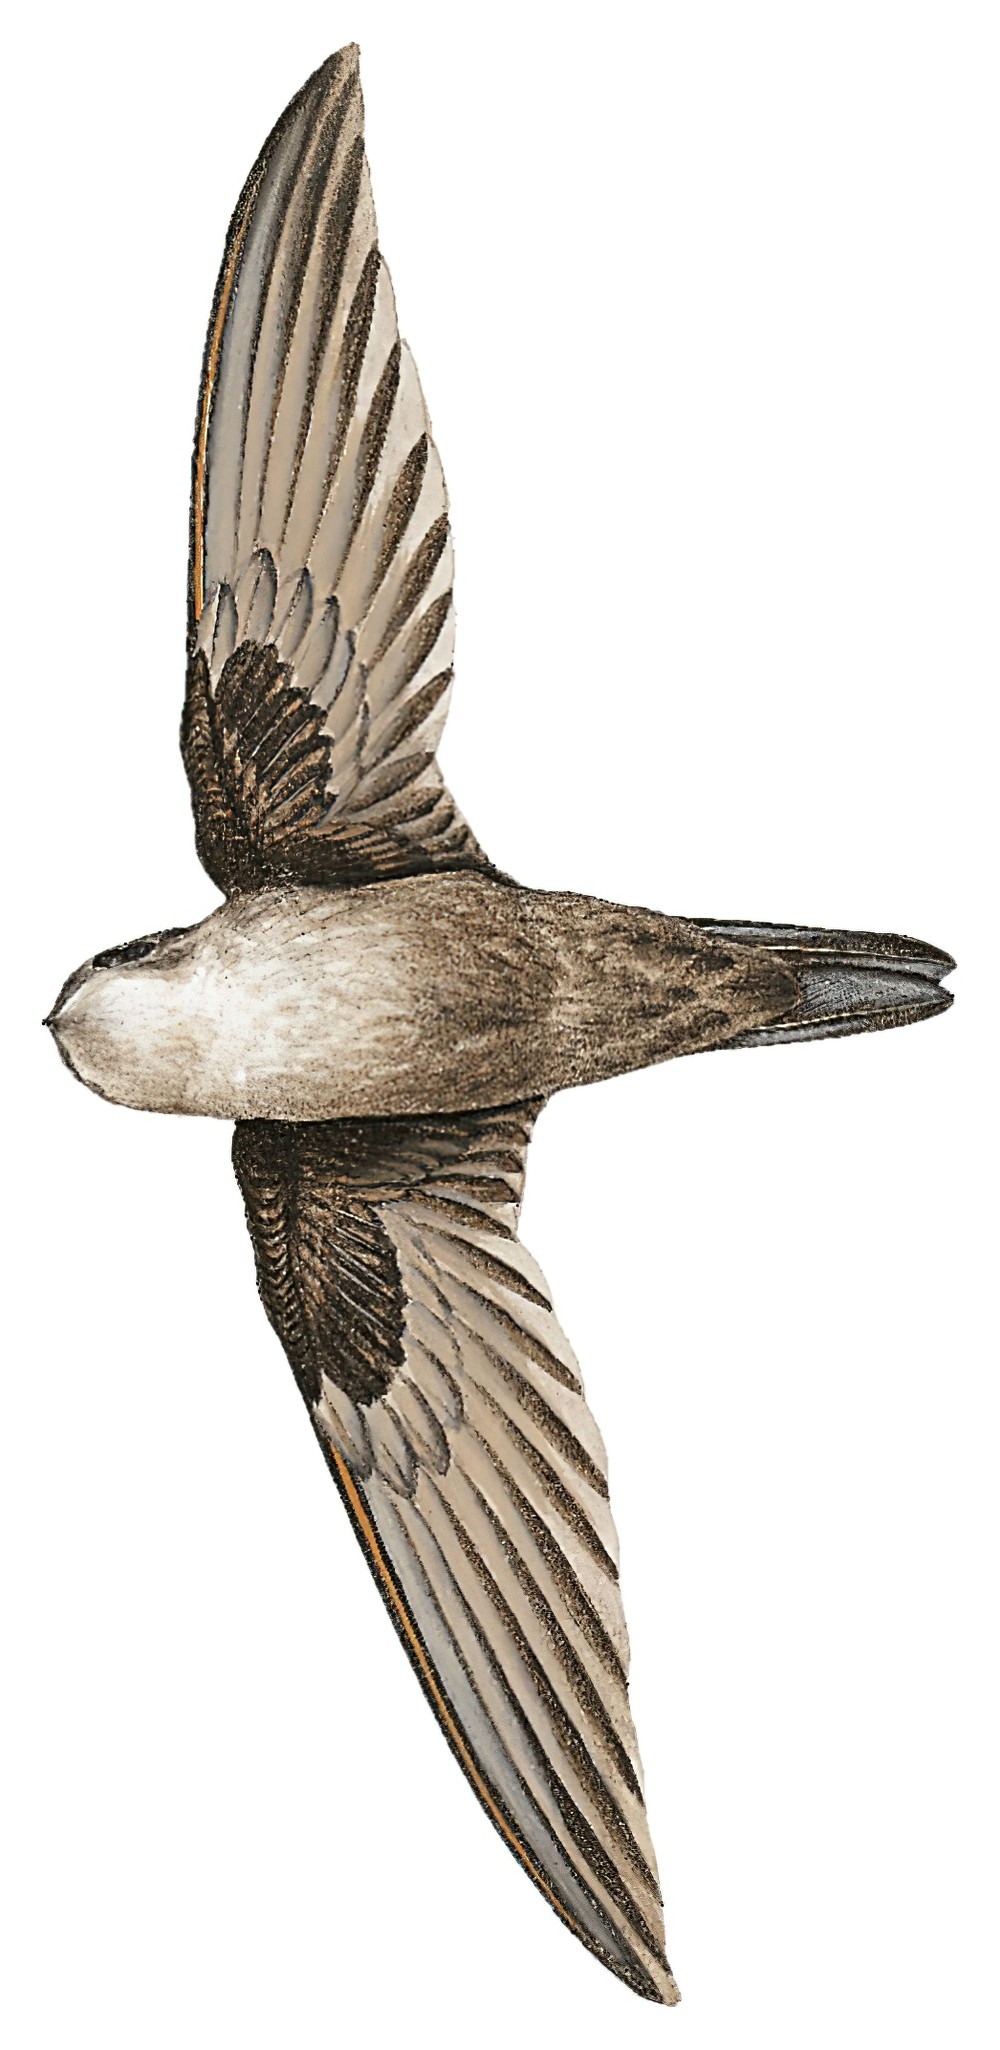 巴布亚金丝燕 / Three-toed Swiftlet / Aerodramus papuensis